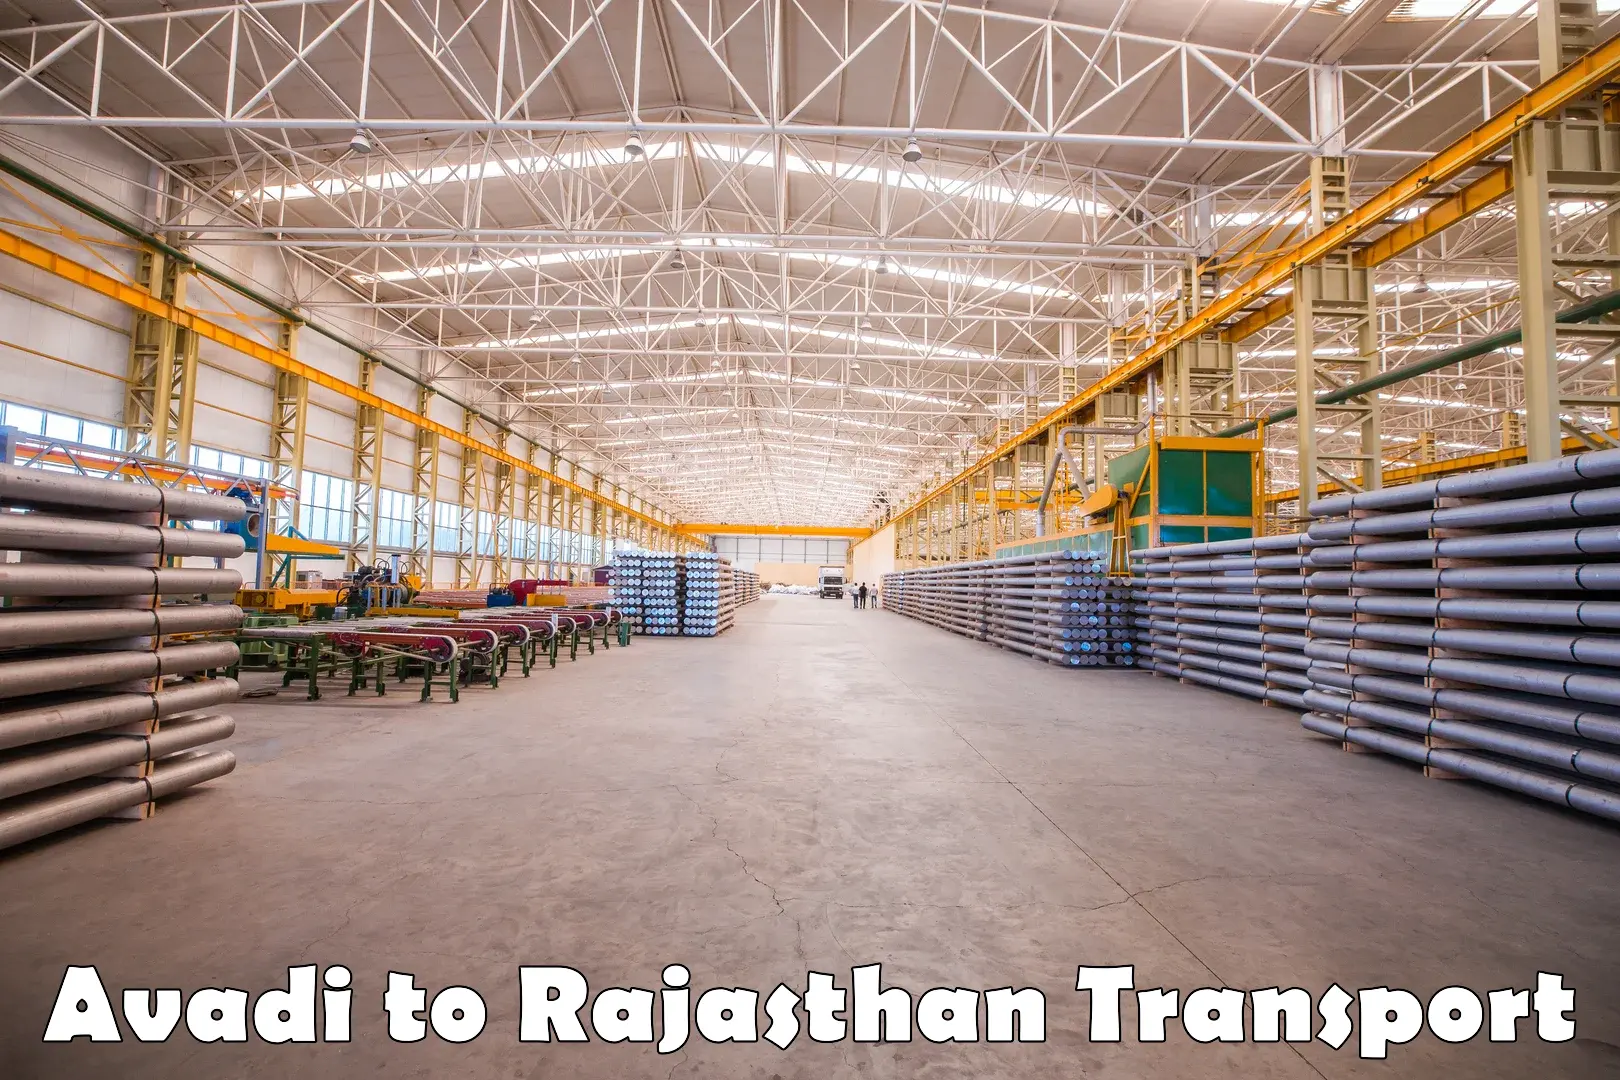 Container transport service Avadi to Deshnok